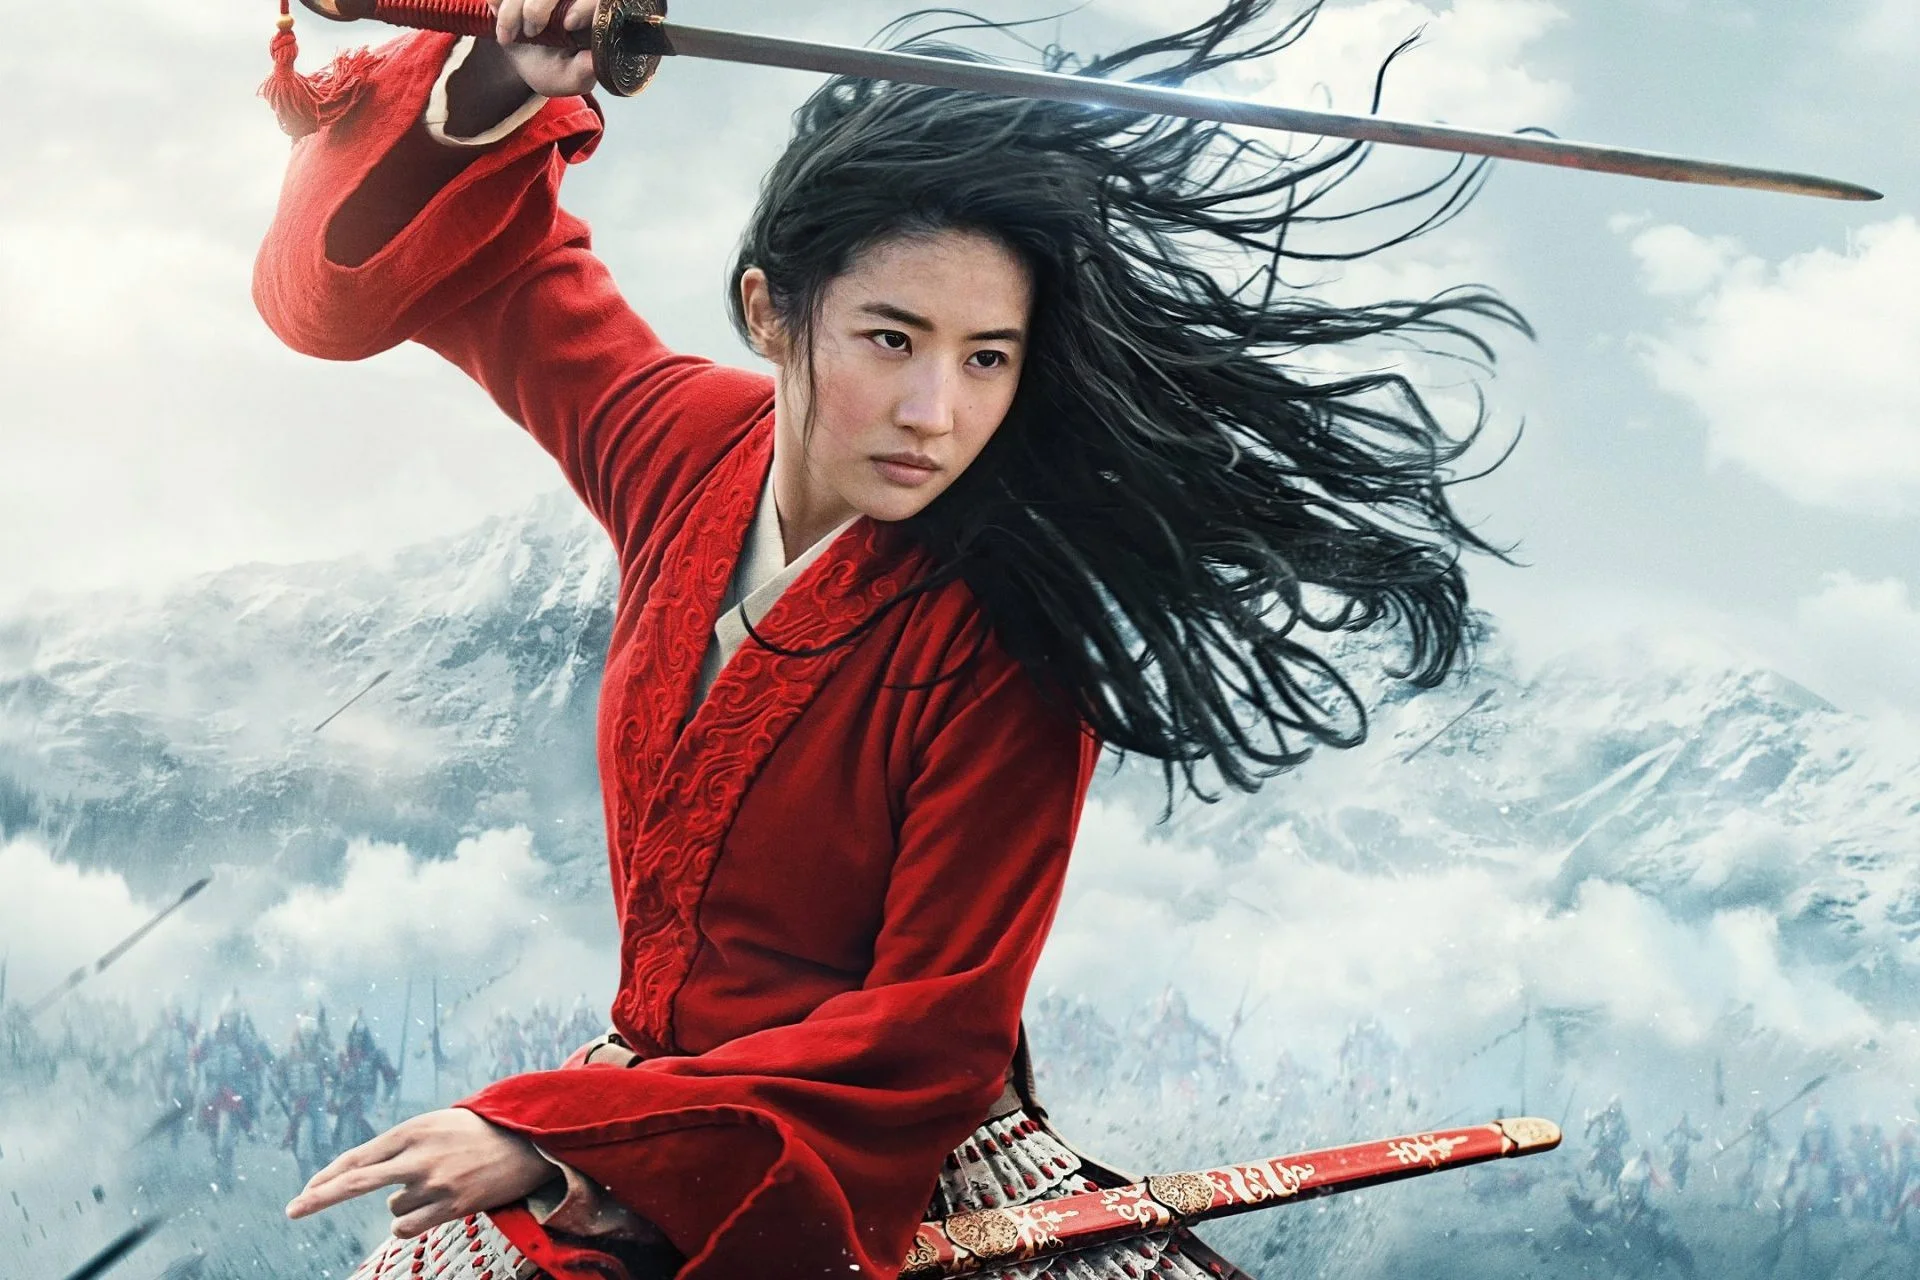 10 сентября в российских кинотеатрах начнется показ фильма «Мулан» (Mulan) — многострадального проекта от Disney. Мы посмотрели его на пресс-показе и готовы поделиться впечатлениями.